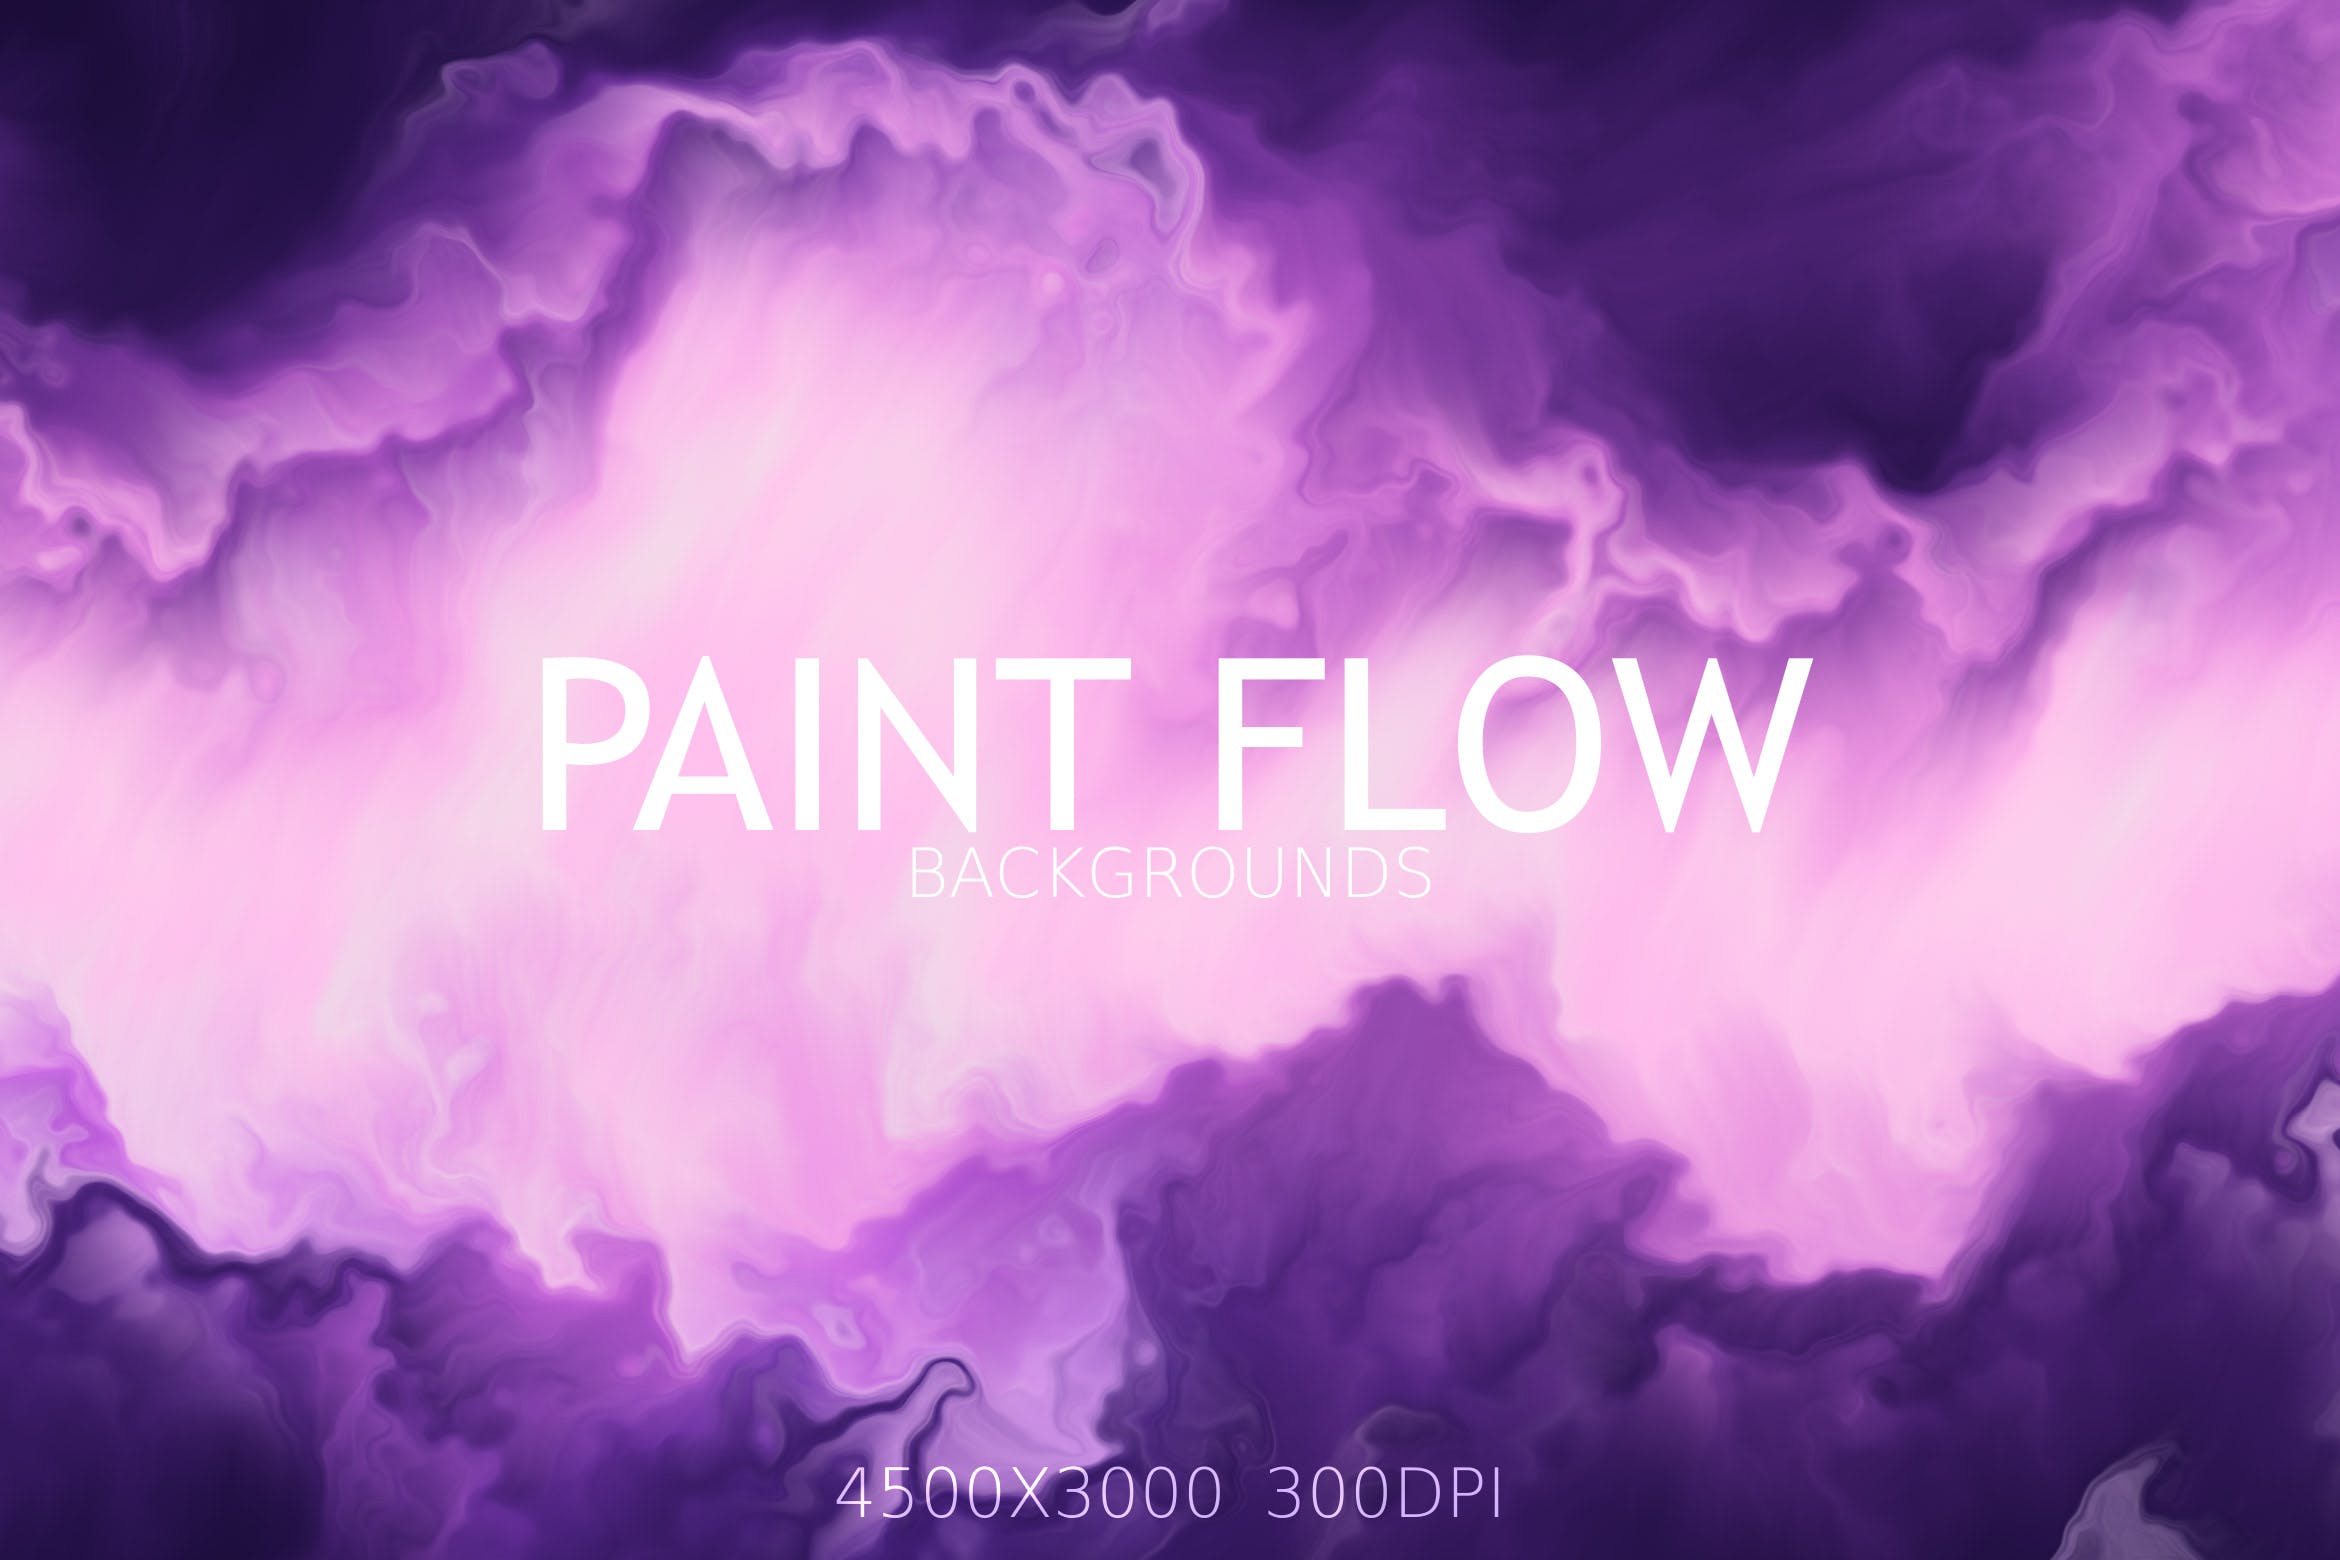 油漆手绘流动风格抽象纹理背景素材 Paint Flow Background插图